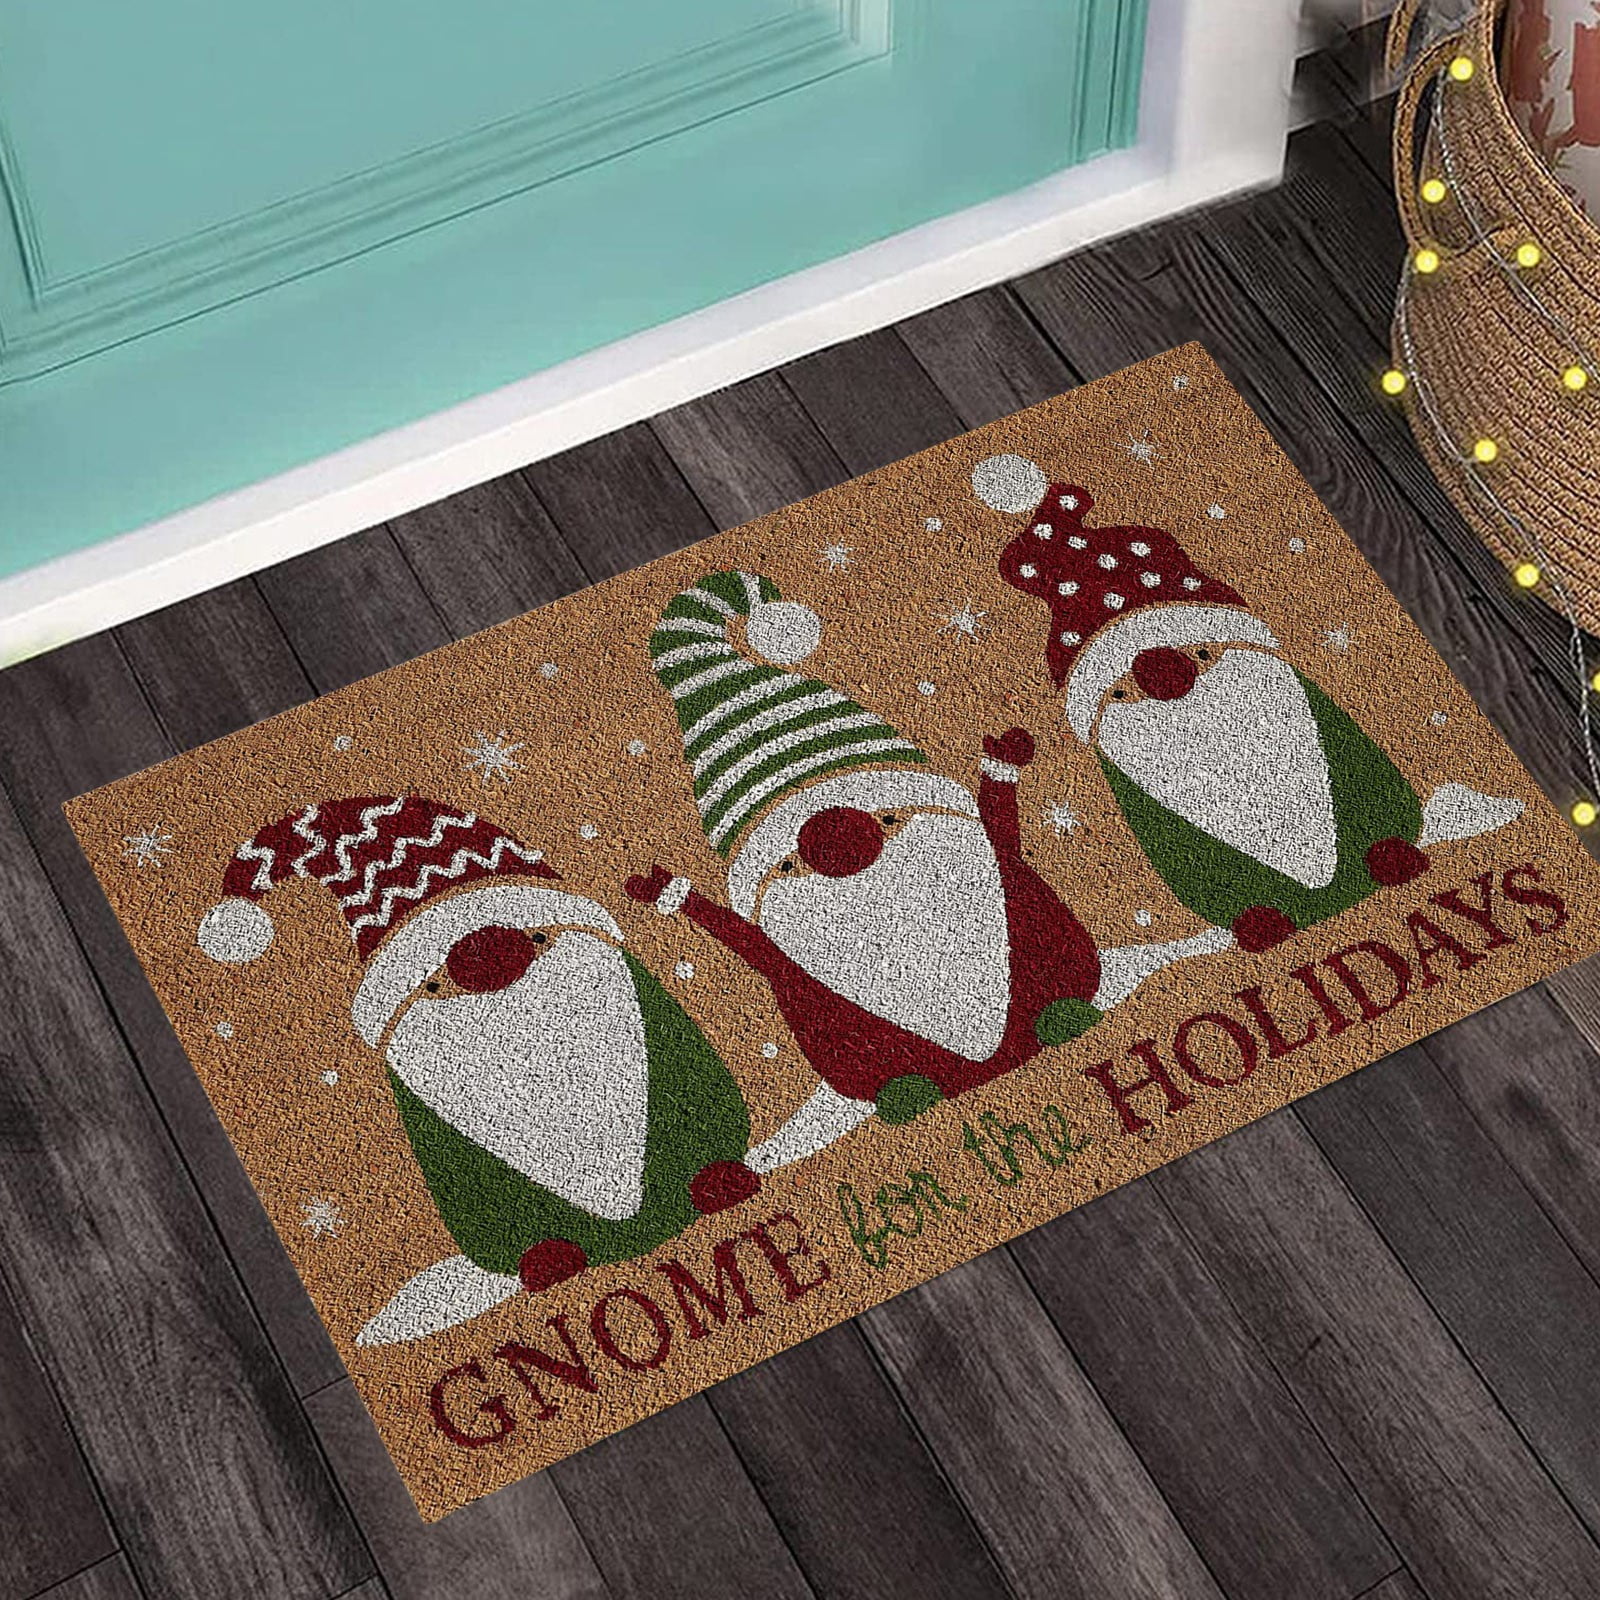 Christmas decor personalized doormat funny doormat welcome mat winter decor Nice Package doormat front doormat